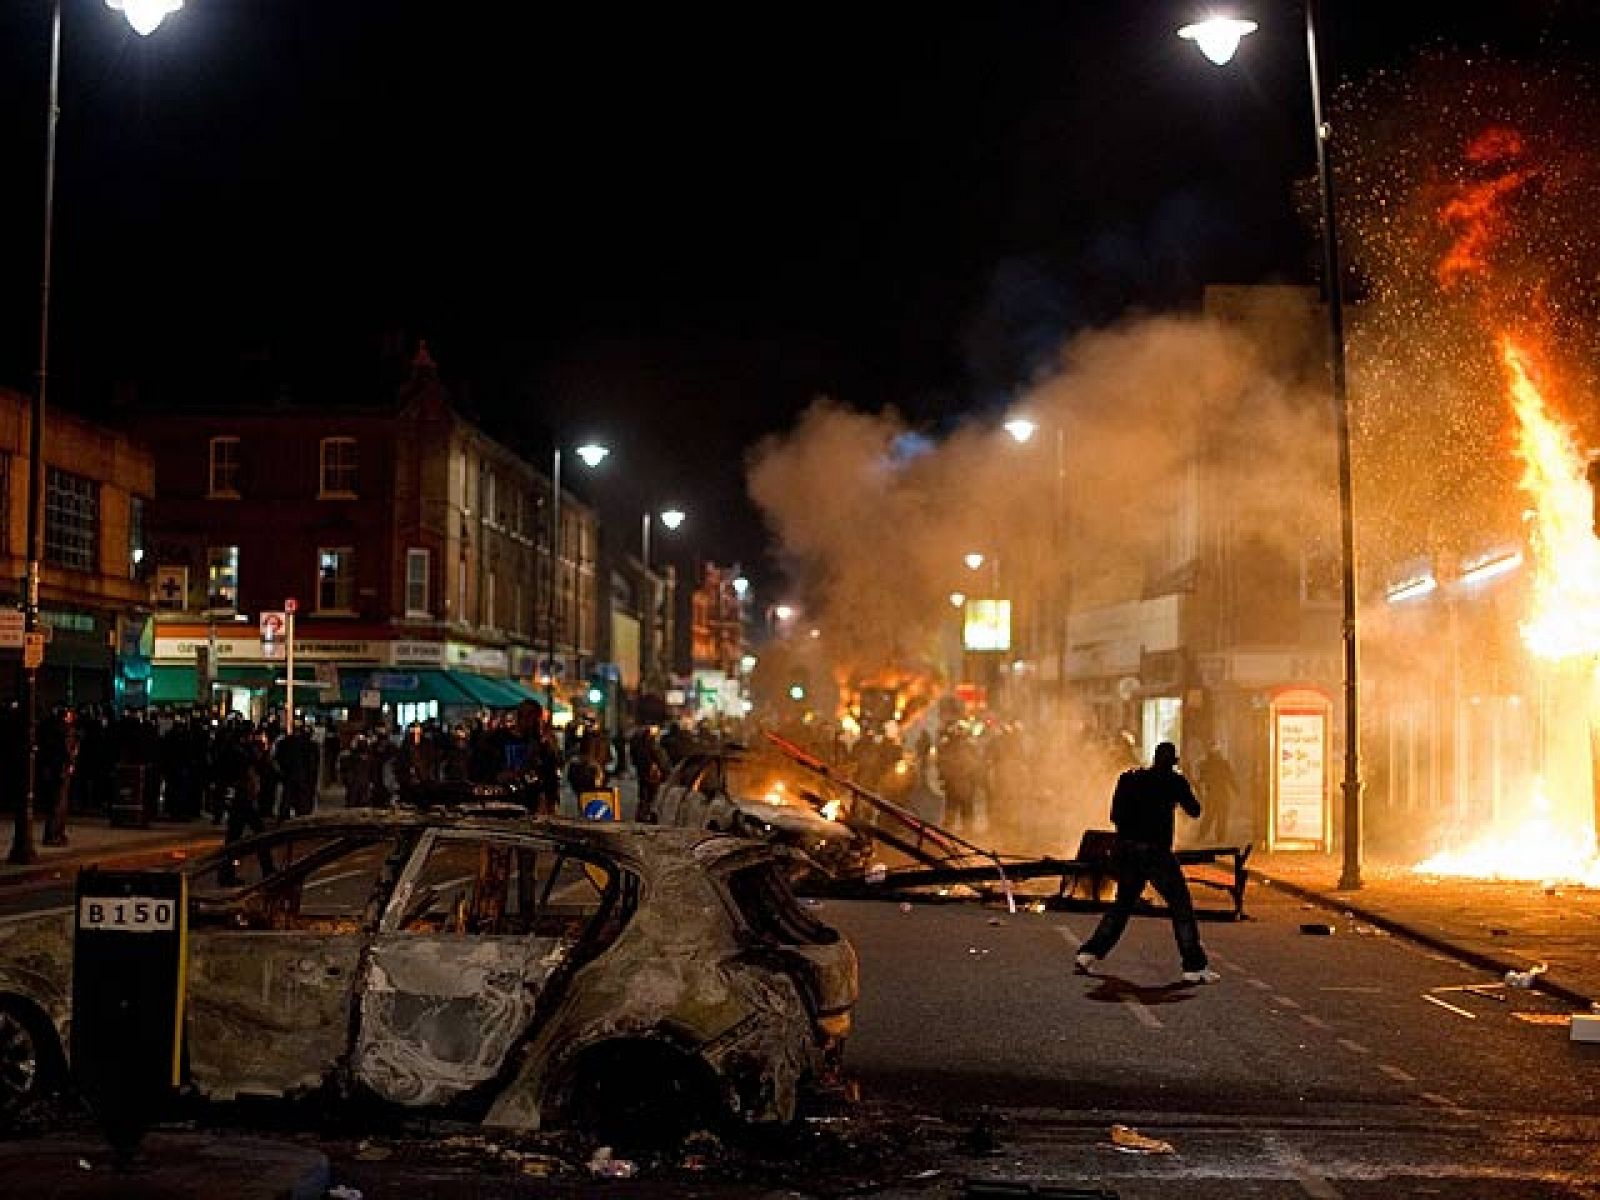 Graves disturbios en Tottenham, Londres, tras la muerte de un joven a manos de la policía